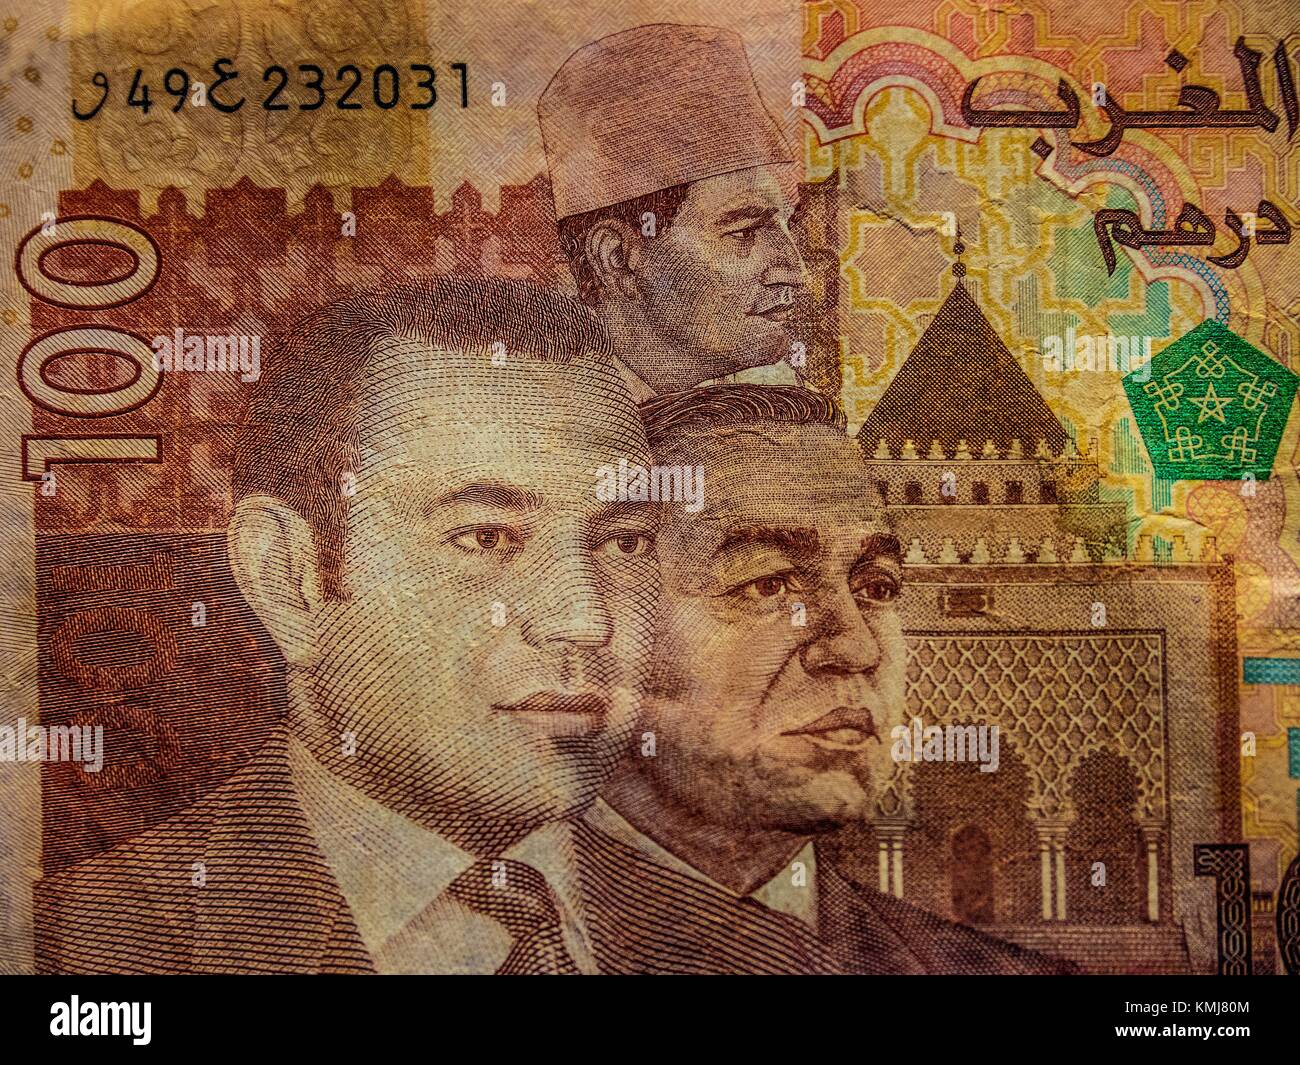 Marokkanische Banknote zeigt die 3 Könige seit der Unabhängigkeit von